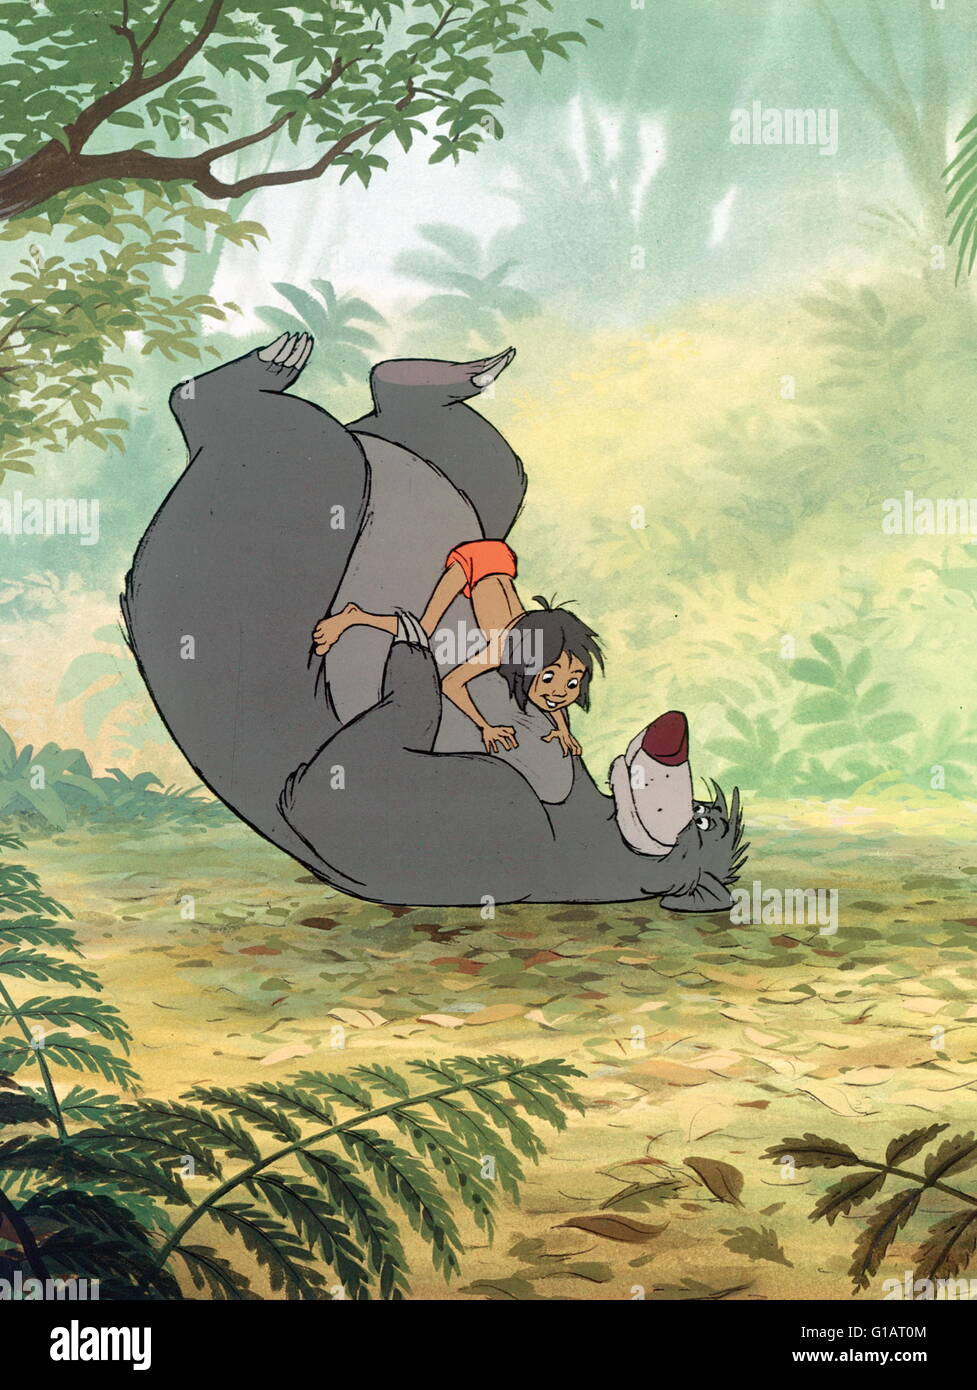 Datum der Freigabe: 18. Oktober 1967 Direktor: Wolfgang Reitherman STUDIO: Walt Disney Productions PLOT: Disney Animation inspiriert von Rudyard Kiplings "Mowgli" Geschichte. Mogli ist ein Junge, der von Wölfen im indischen Dschungel angesprochen wurde. Wenn die Wölfe zu hören, dass die heftigen Tiger Shere Kahn, in der Nähe ist, beschließen sie, Mowgli zu einem lokalen "Mann Stamm" zu senden. Mowgli trifft auf seinem Weg in das Dorf viele tierische Charaktere in diesem musikalischen Märchen. Als Shere Kahn Moglis Präsenz erfährt, er spürt ihn Bild: Stimmen Phil Harris, Sebastian Cabot, Louis Prima (Credit Bild: C Walt Disney Productions/Ente Stockfoto